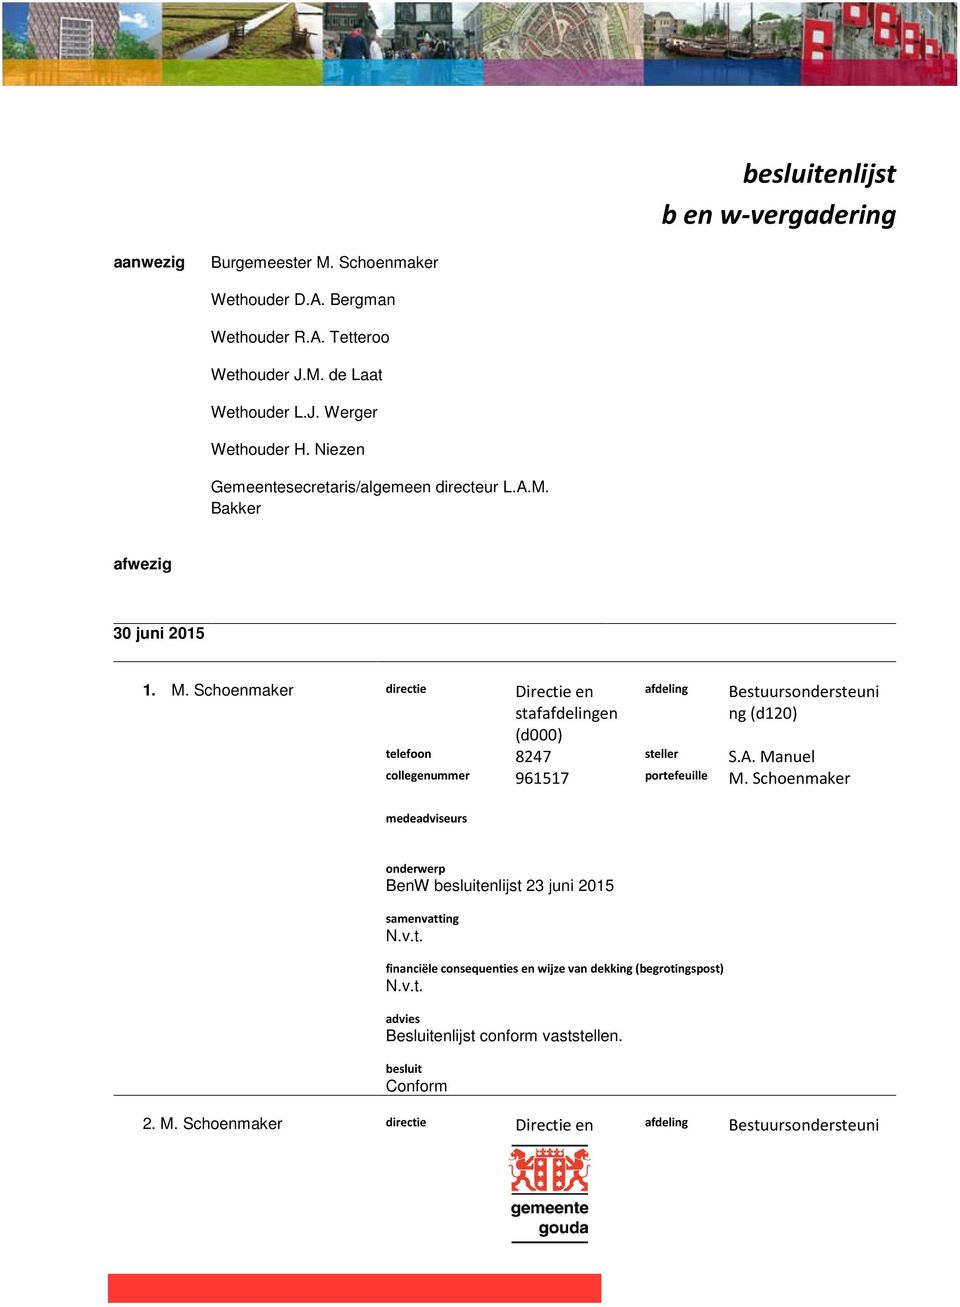 Schoenmaker directie Directie en stafen (d000) Bestuursondersteuni ng (d120) telefoon 8247 steller S.A.